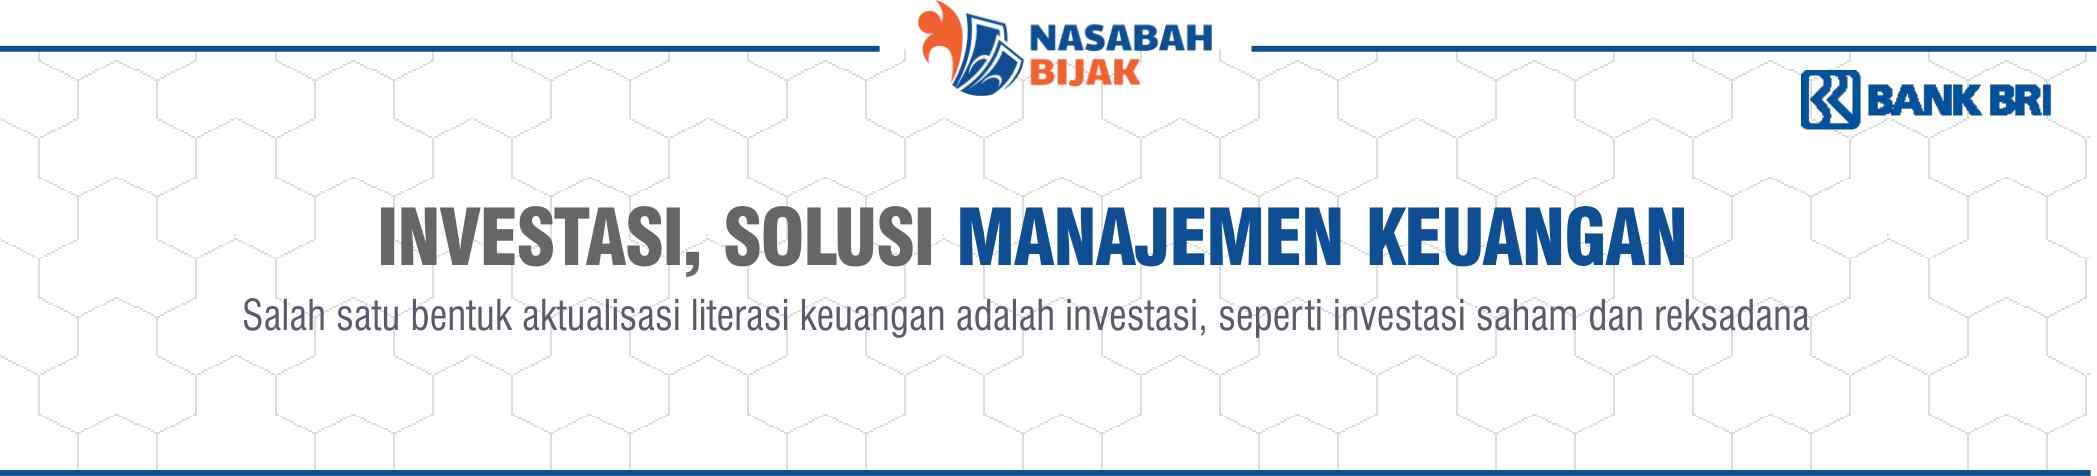 Investasi, Solusi Manajemen Keuangan